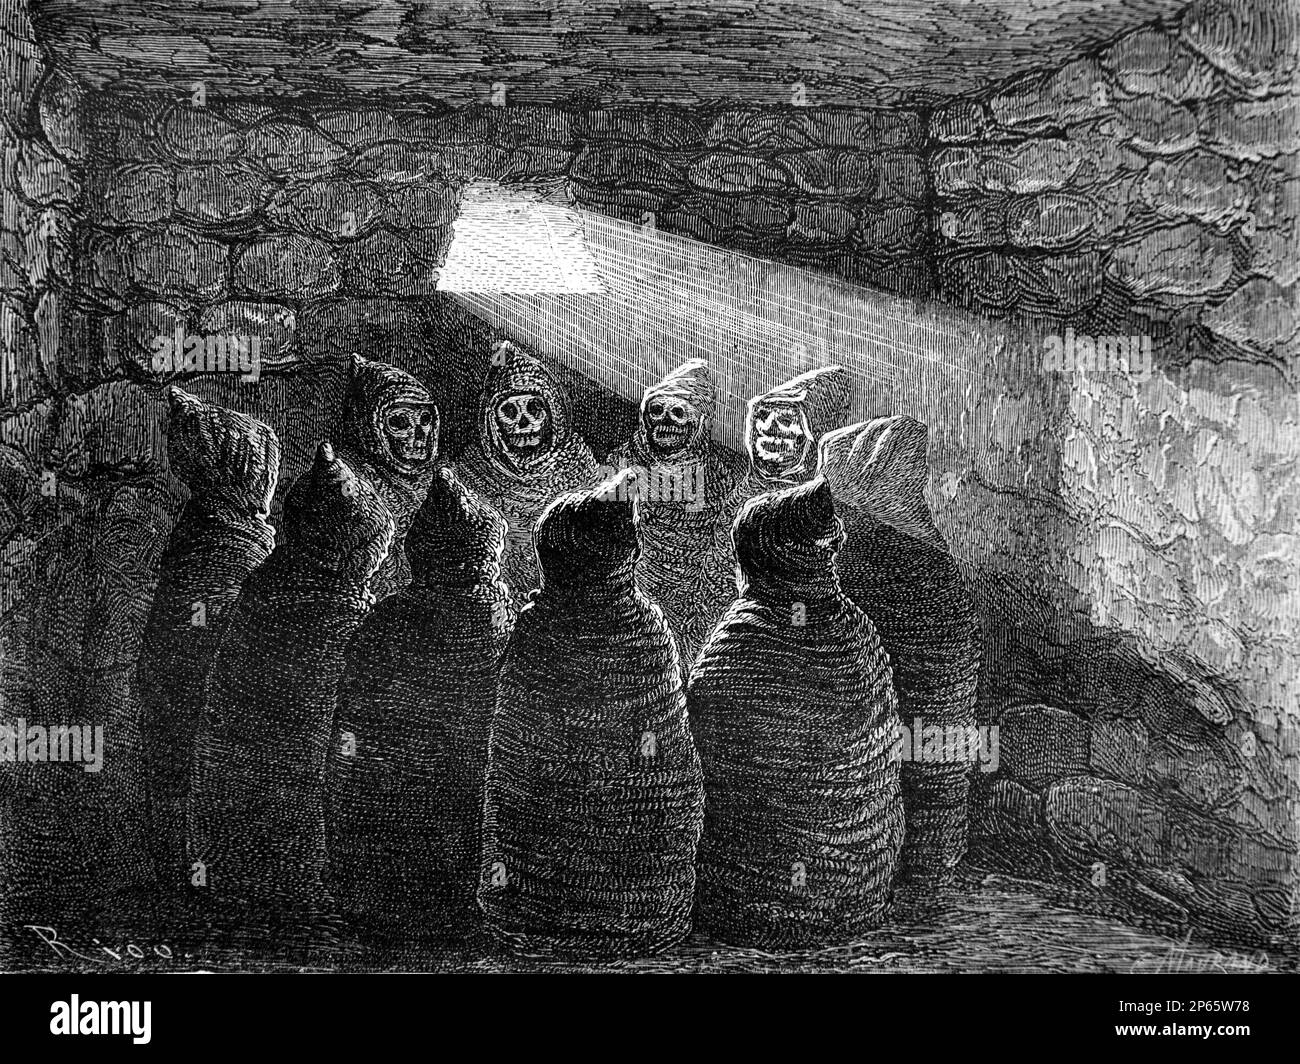 Aymara Mumien oder Leichen in einer fetalen Position in einem Chullpa oder Chulpa, ein antiker Aymara Grabturm, Grab oder Sepulchre, in der Region Altiplano in Peru und Bolivien. Vintage-Gravur oder Abbildung 1862 Stockfoto